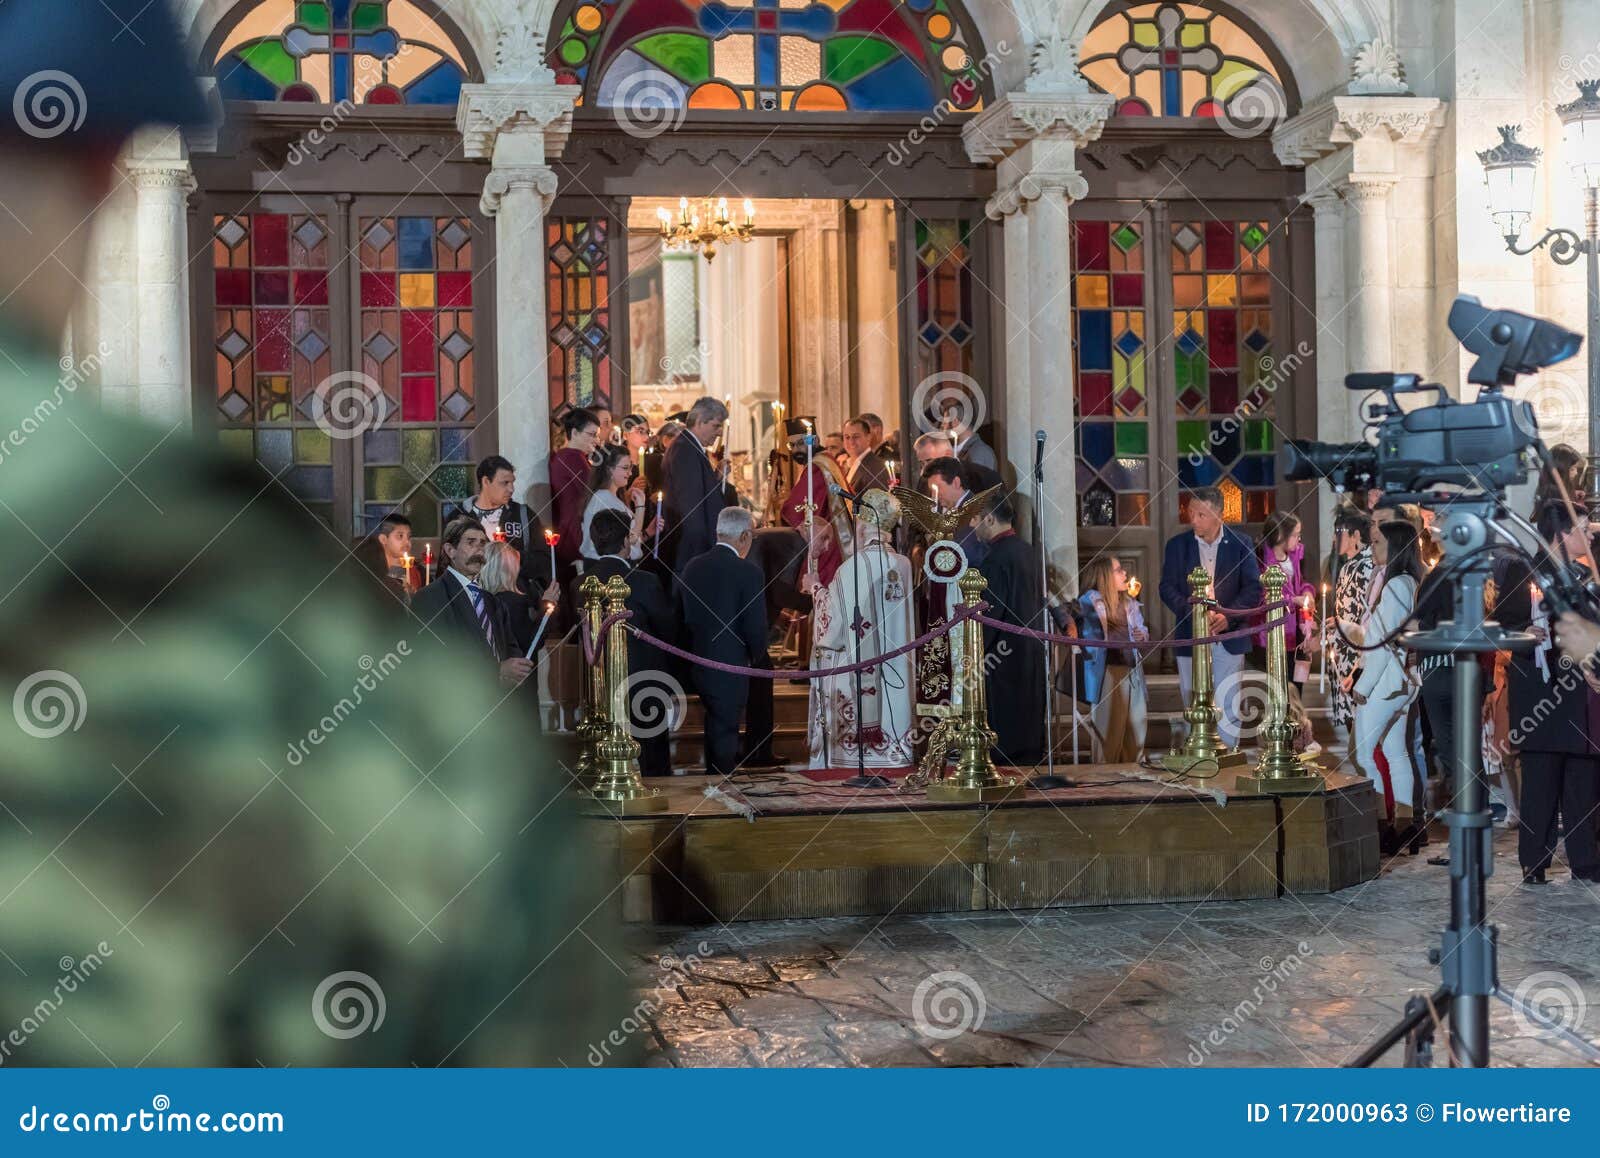 塞浦路斯 阿拉米诺斯 教堂 正统 结构 宗教 圣米纳斯图片下载 - 觅知网